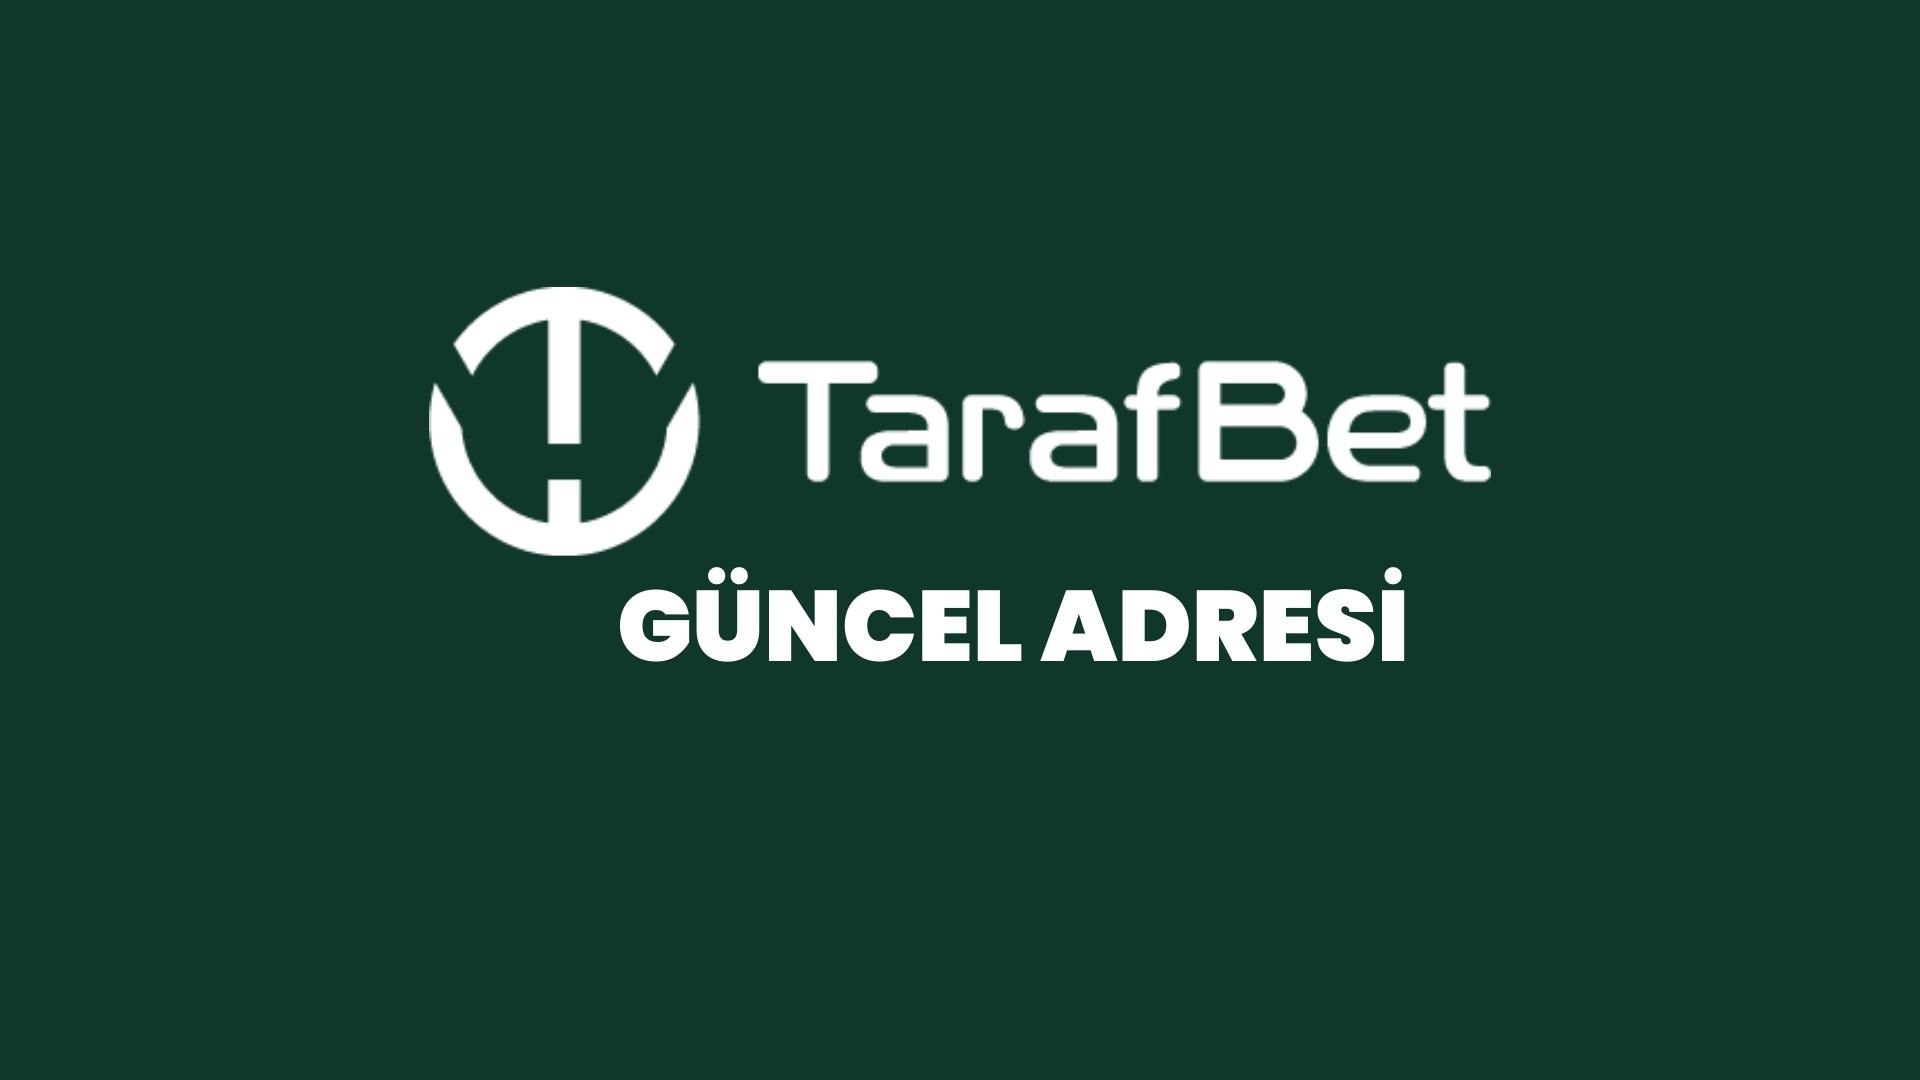 tarafbet-guncel-adresi